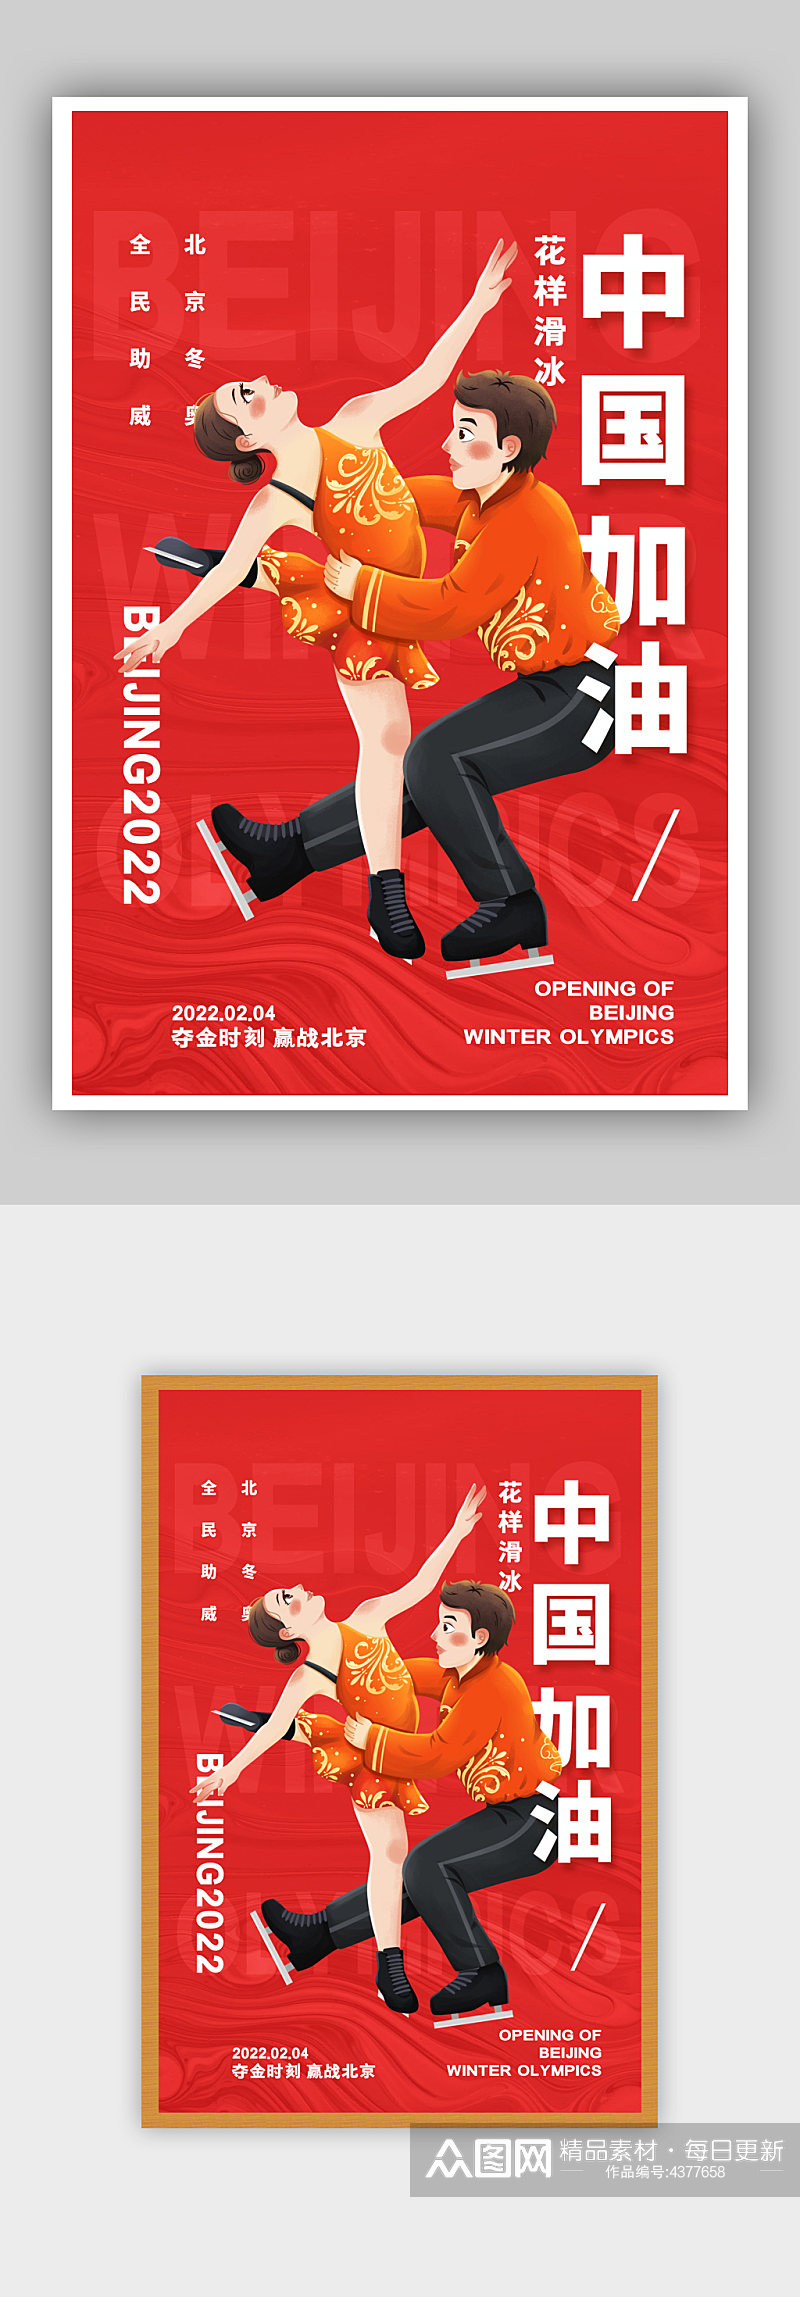 简约红色中国加油冬奥会花样滑冰宣传海报素材